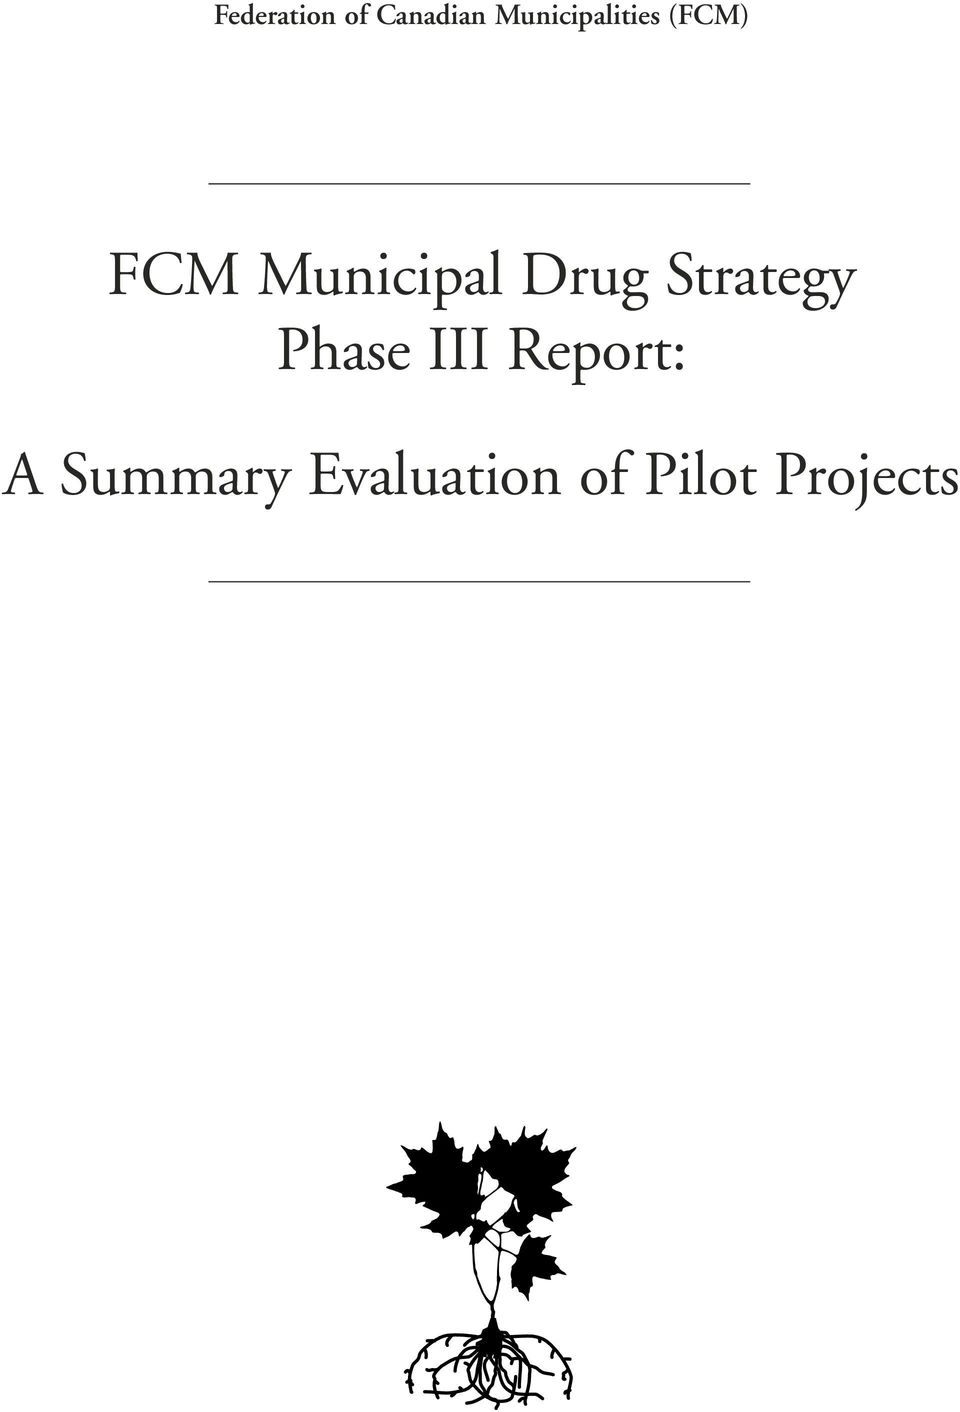 Municipal Drug Strategy Phase